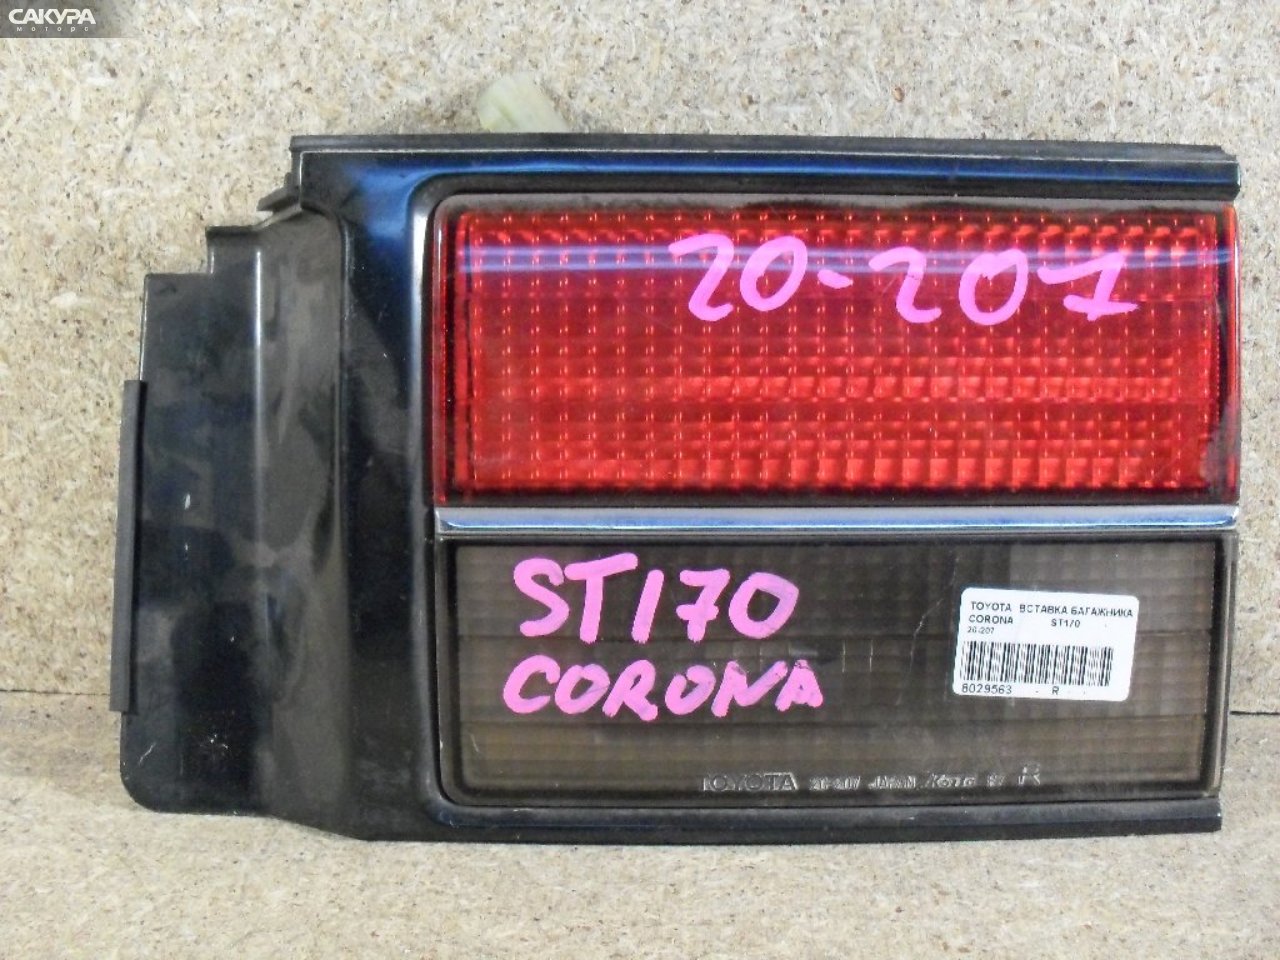 Фонарь вставка багажника правый Toyota Corona ST170 20-207: купить в Сакура Абакан.